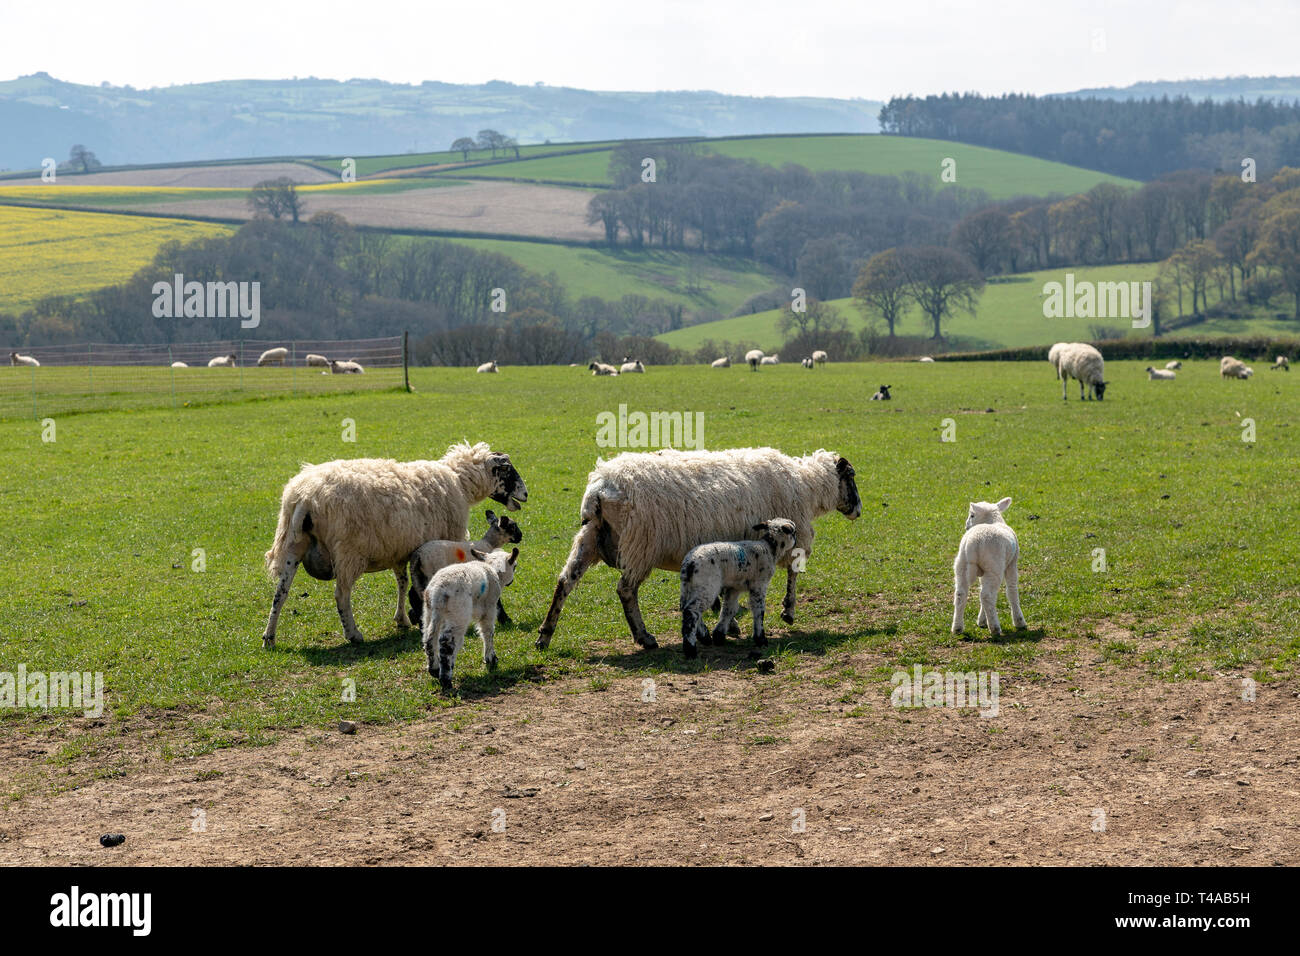 Agneaux dans le Devon, domaine agricole, l'Agriculture, de l'Angleterre, l'anglais, la culture, le Parc National d'Exmoor, ferme, de la liberté, de l'herbe, pâturage, l'élevage, Mam Banque D'Images